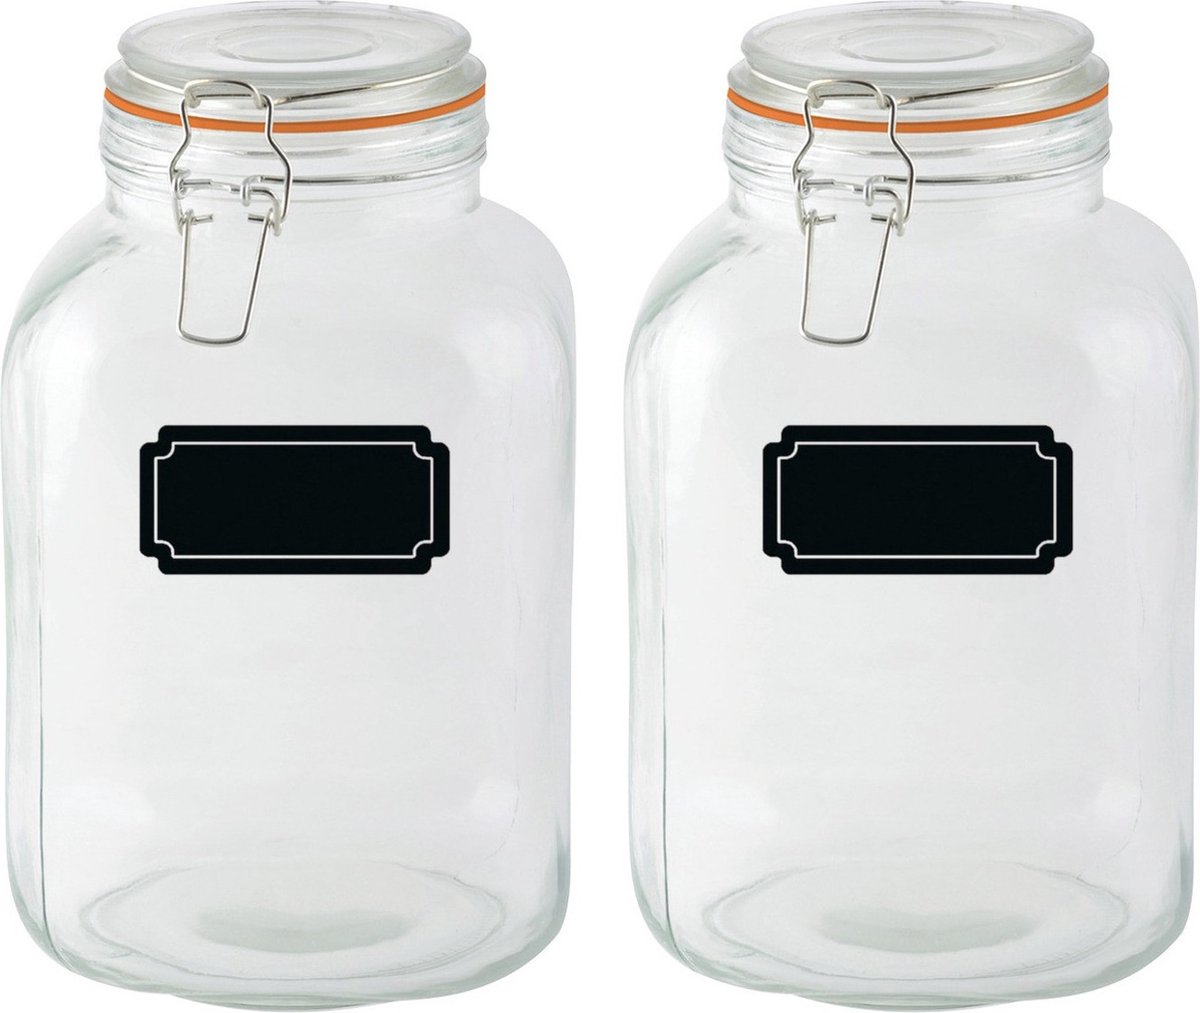 Weckpotten/inmaakpotten - 2x - 3L - glas - met beugelsluiting - incl. etiketten